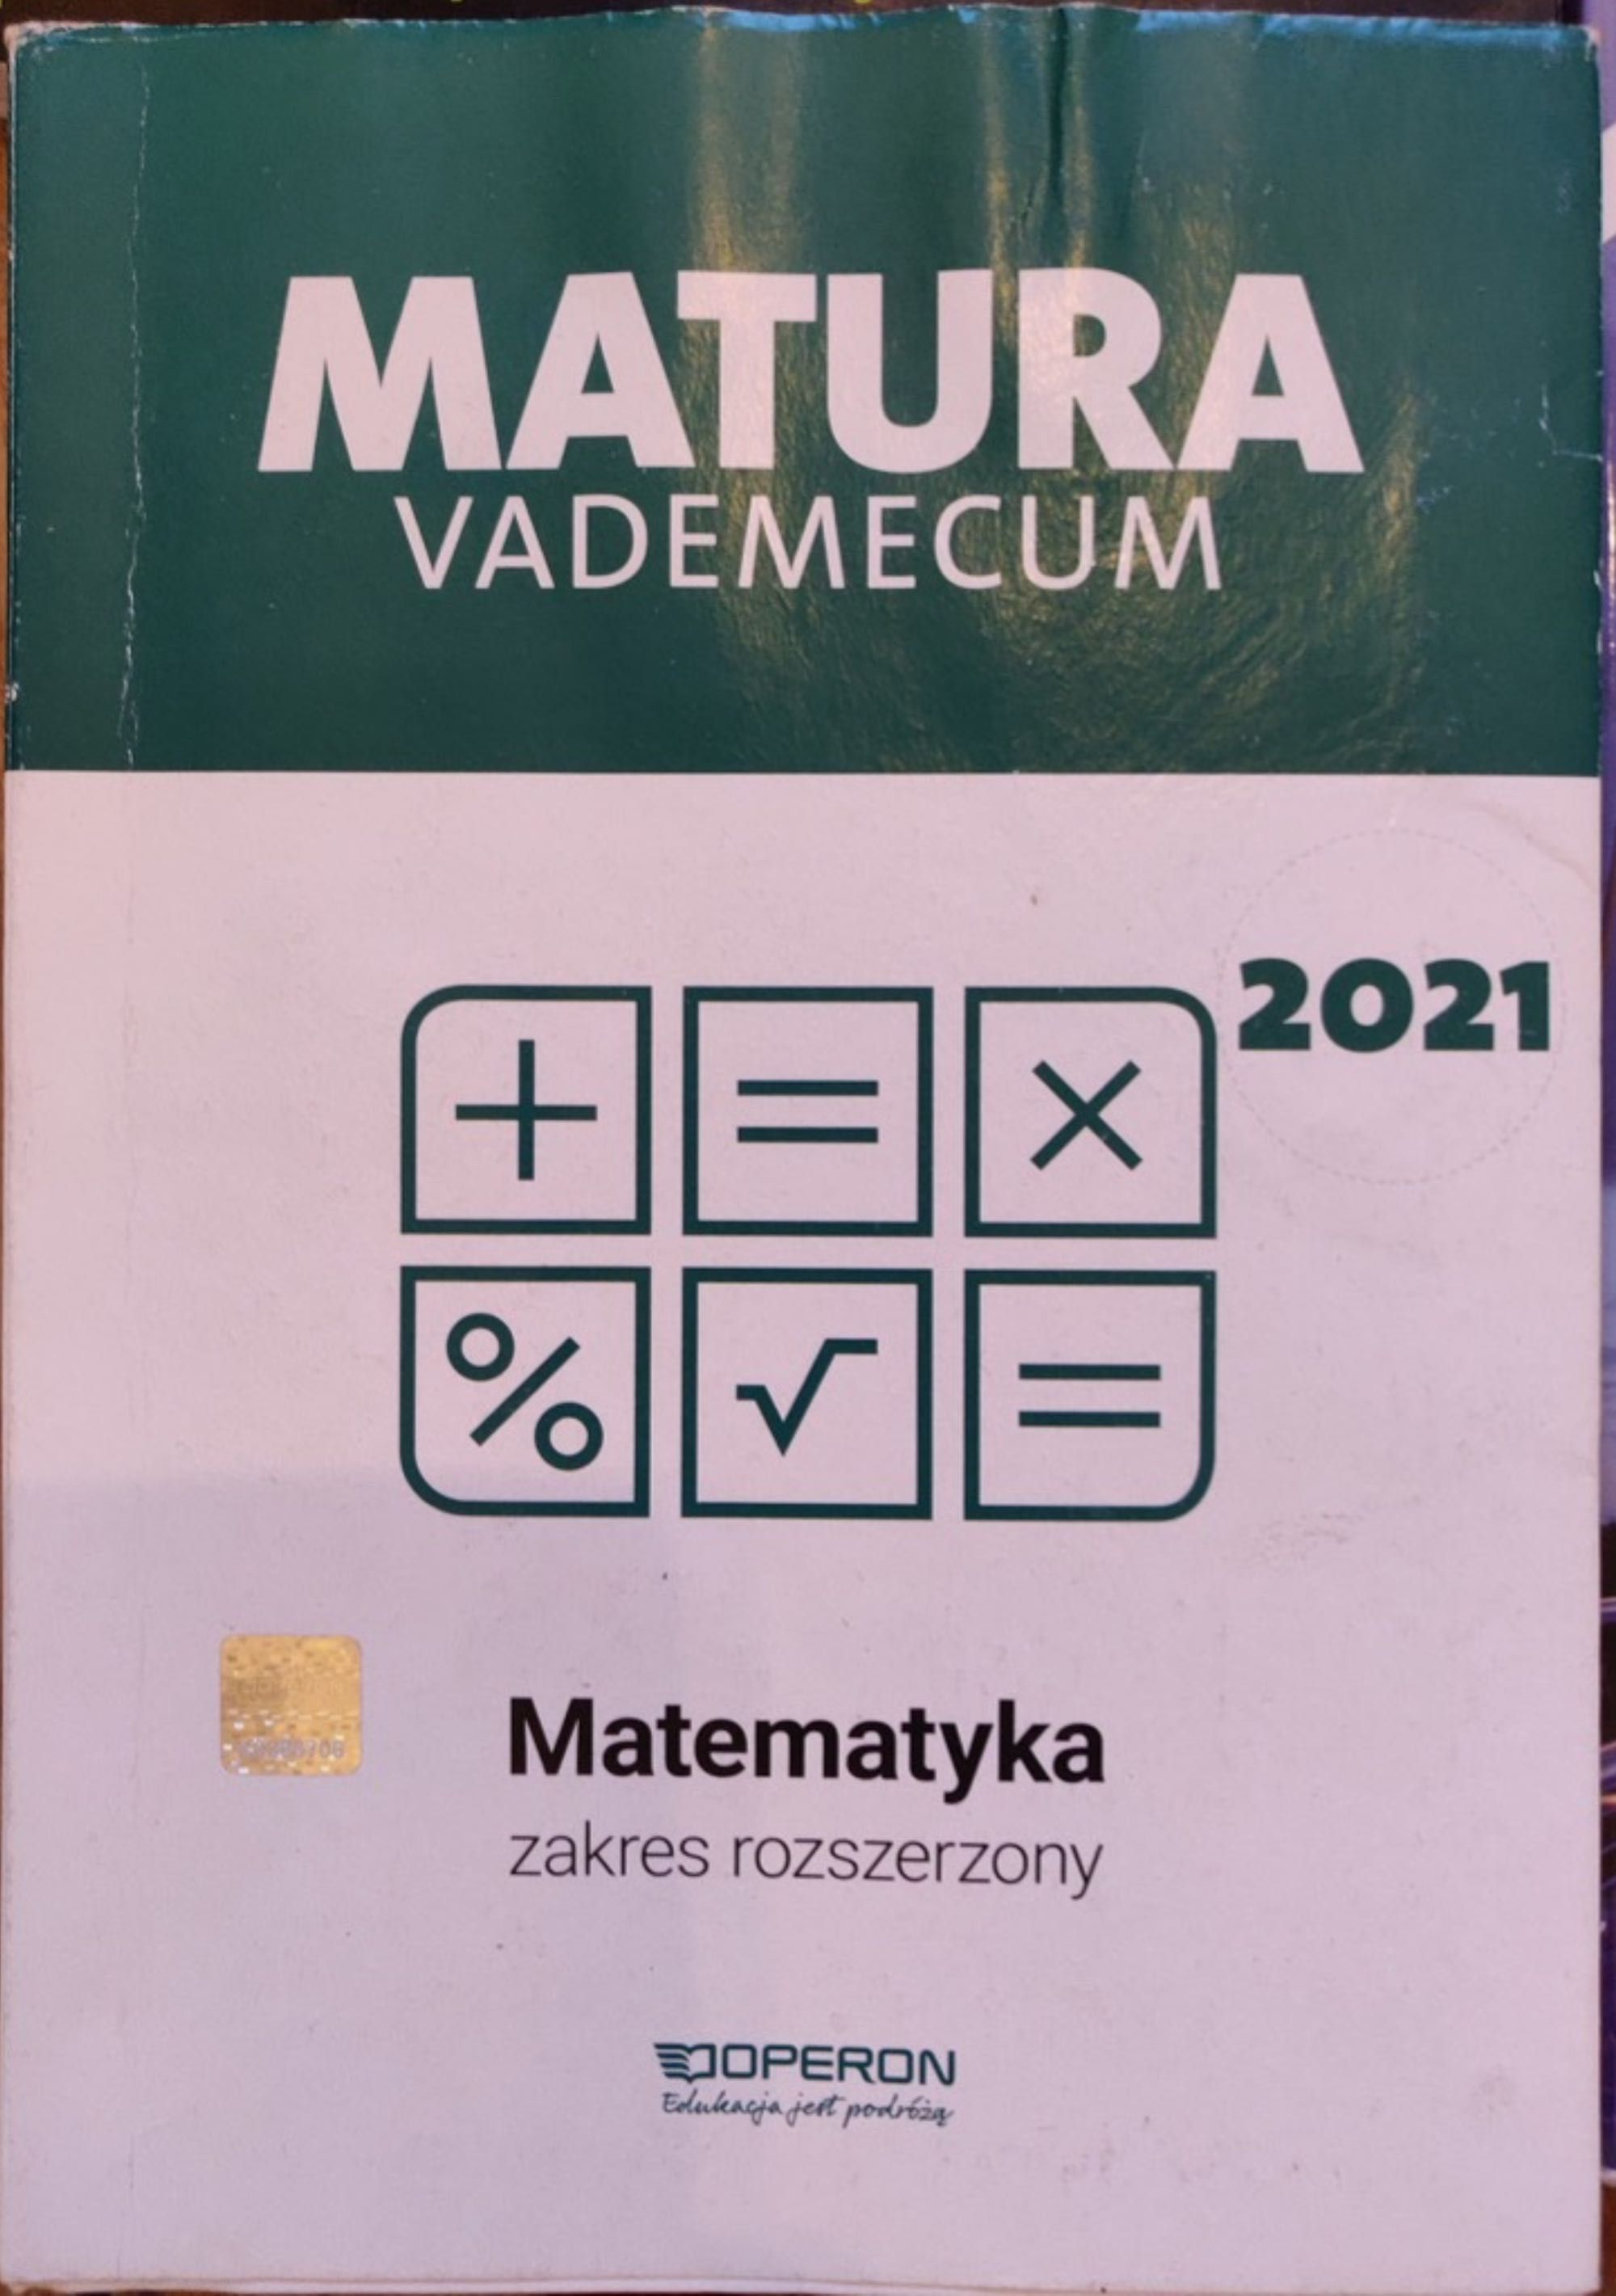 Matematyka – Matura Vademecum zakres rozszerzony